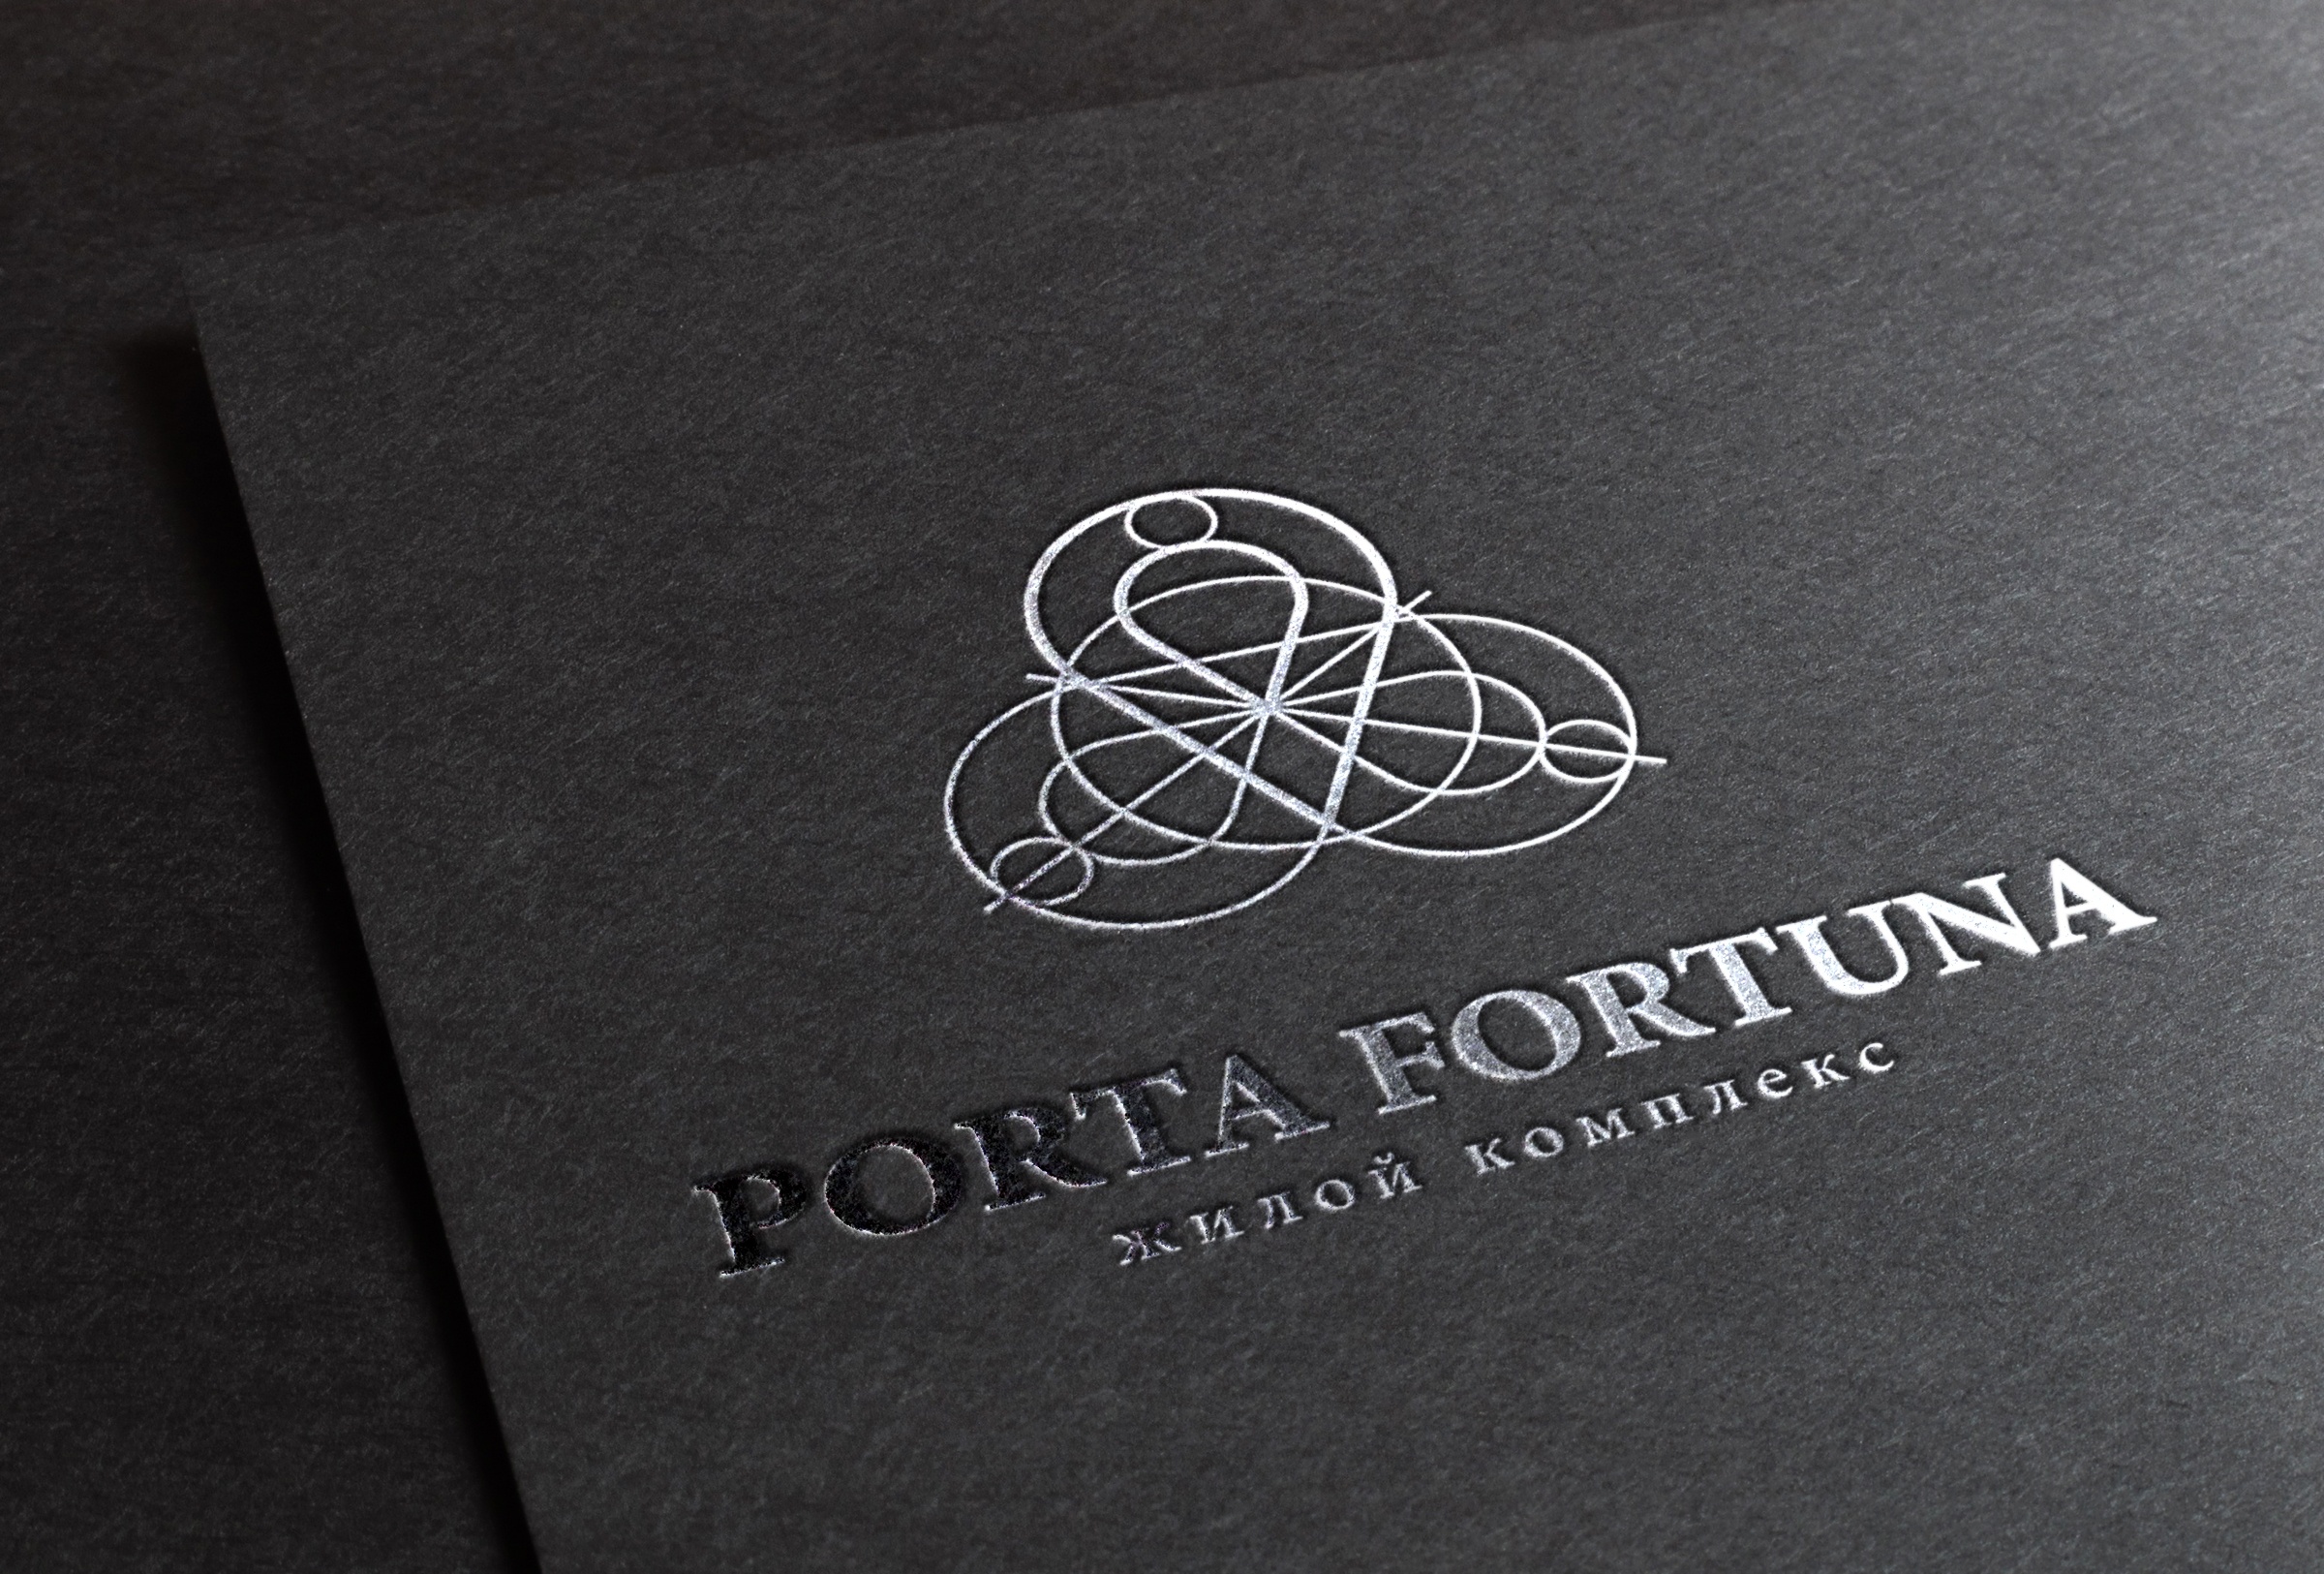 PORTA FORTUNA - image 7